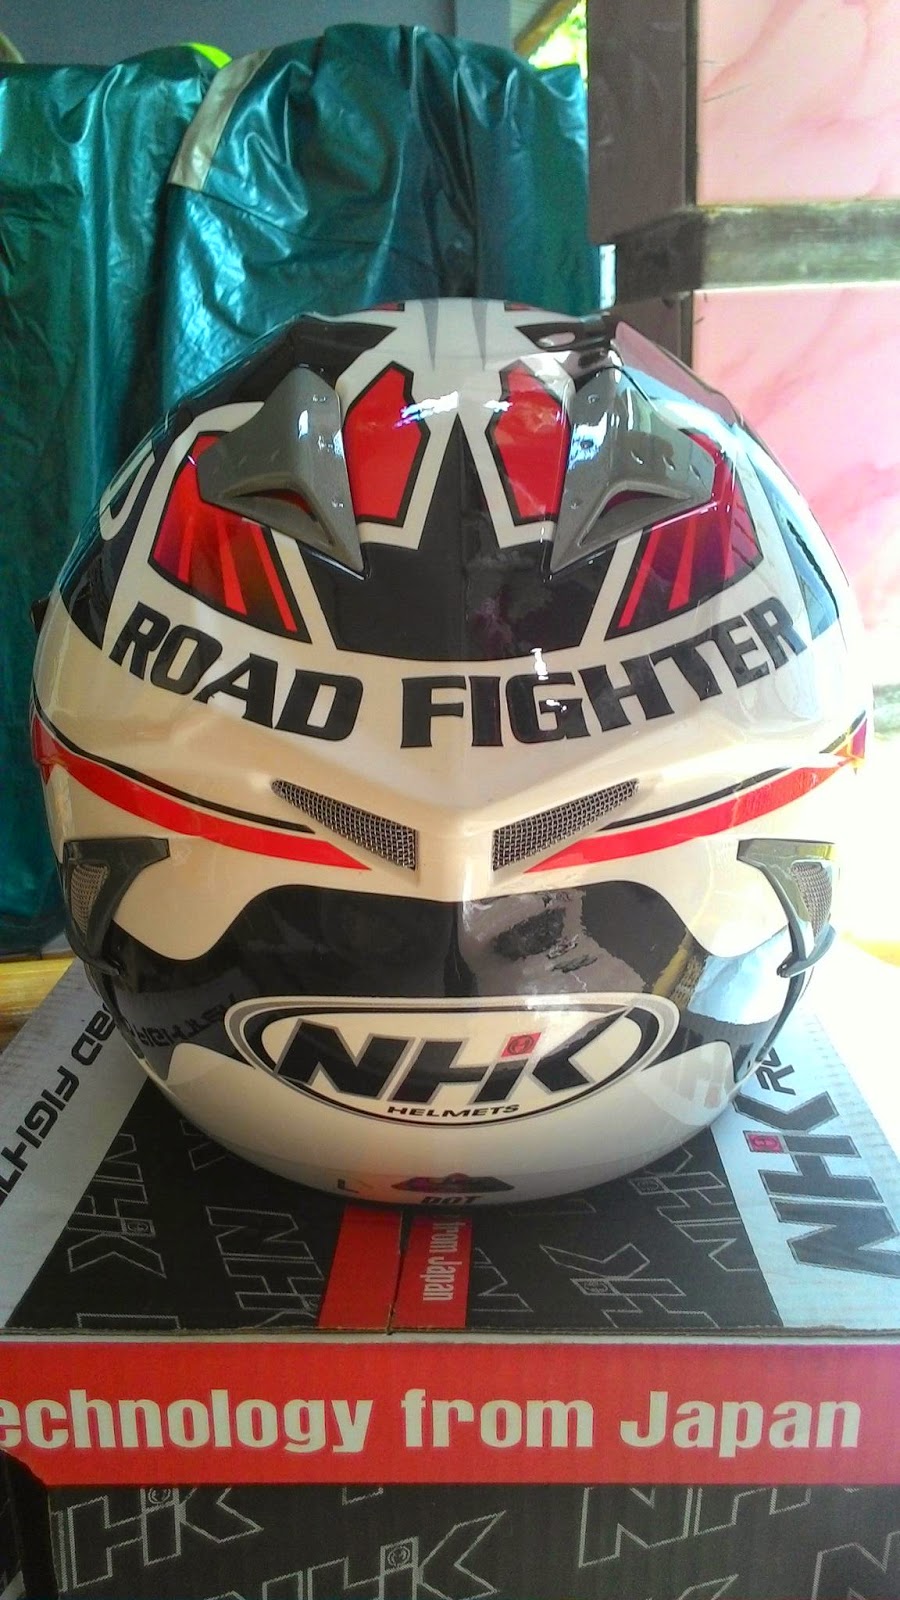 helm nhk road fighter